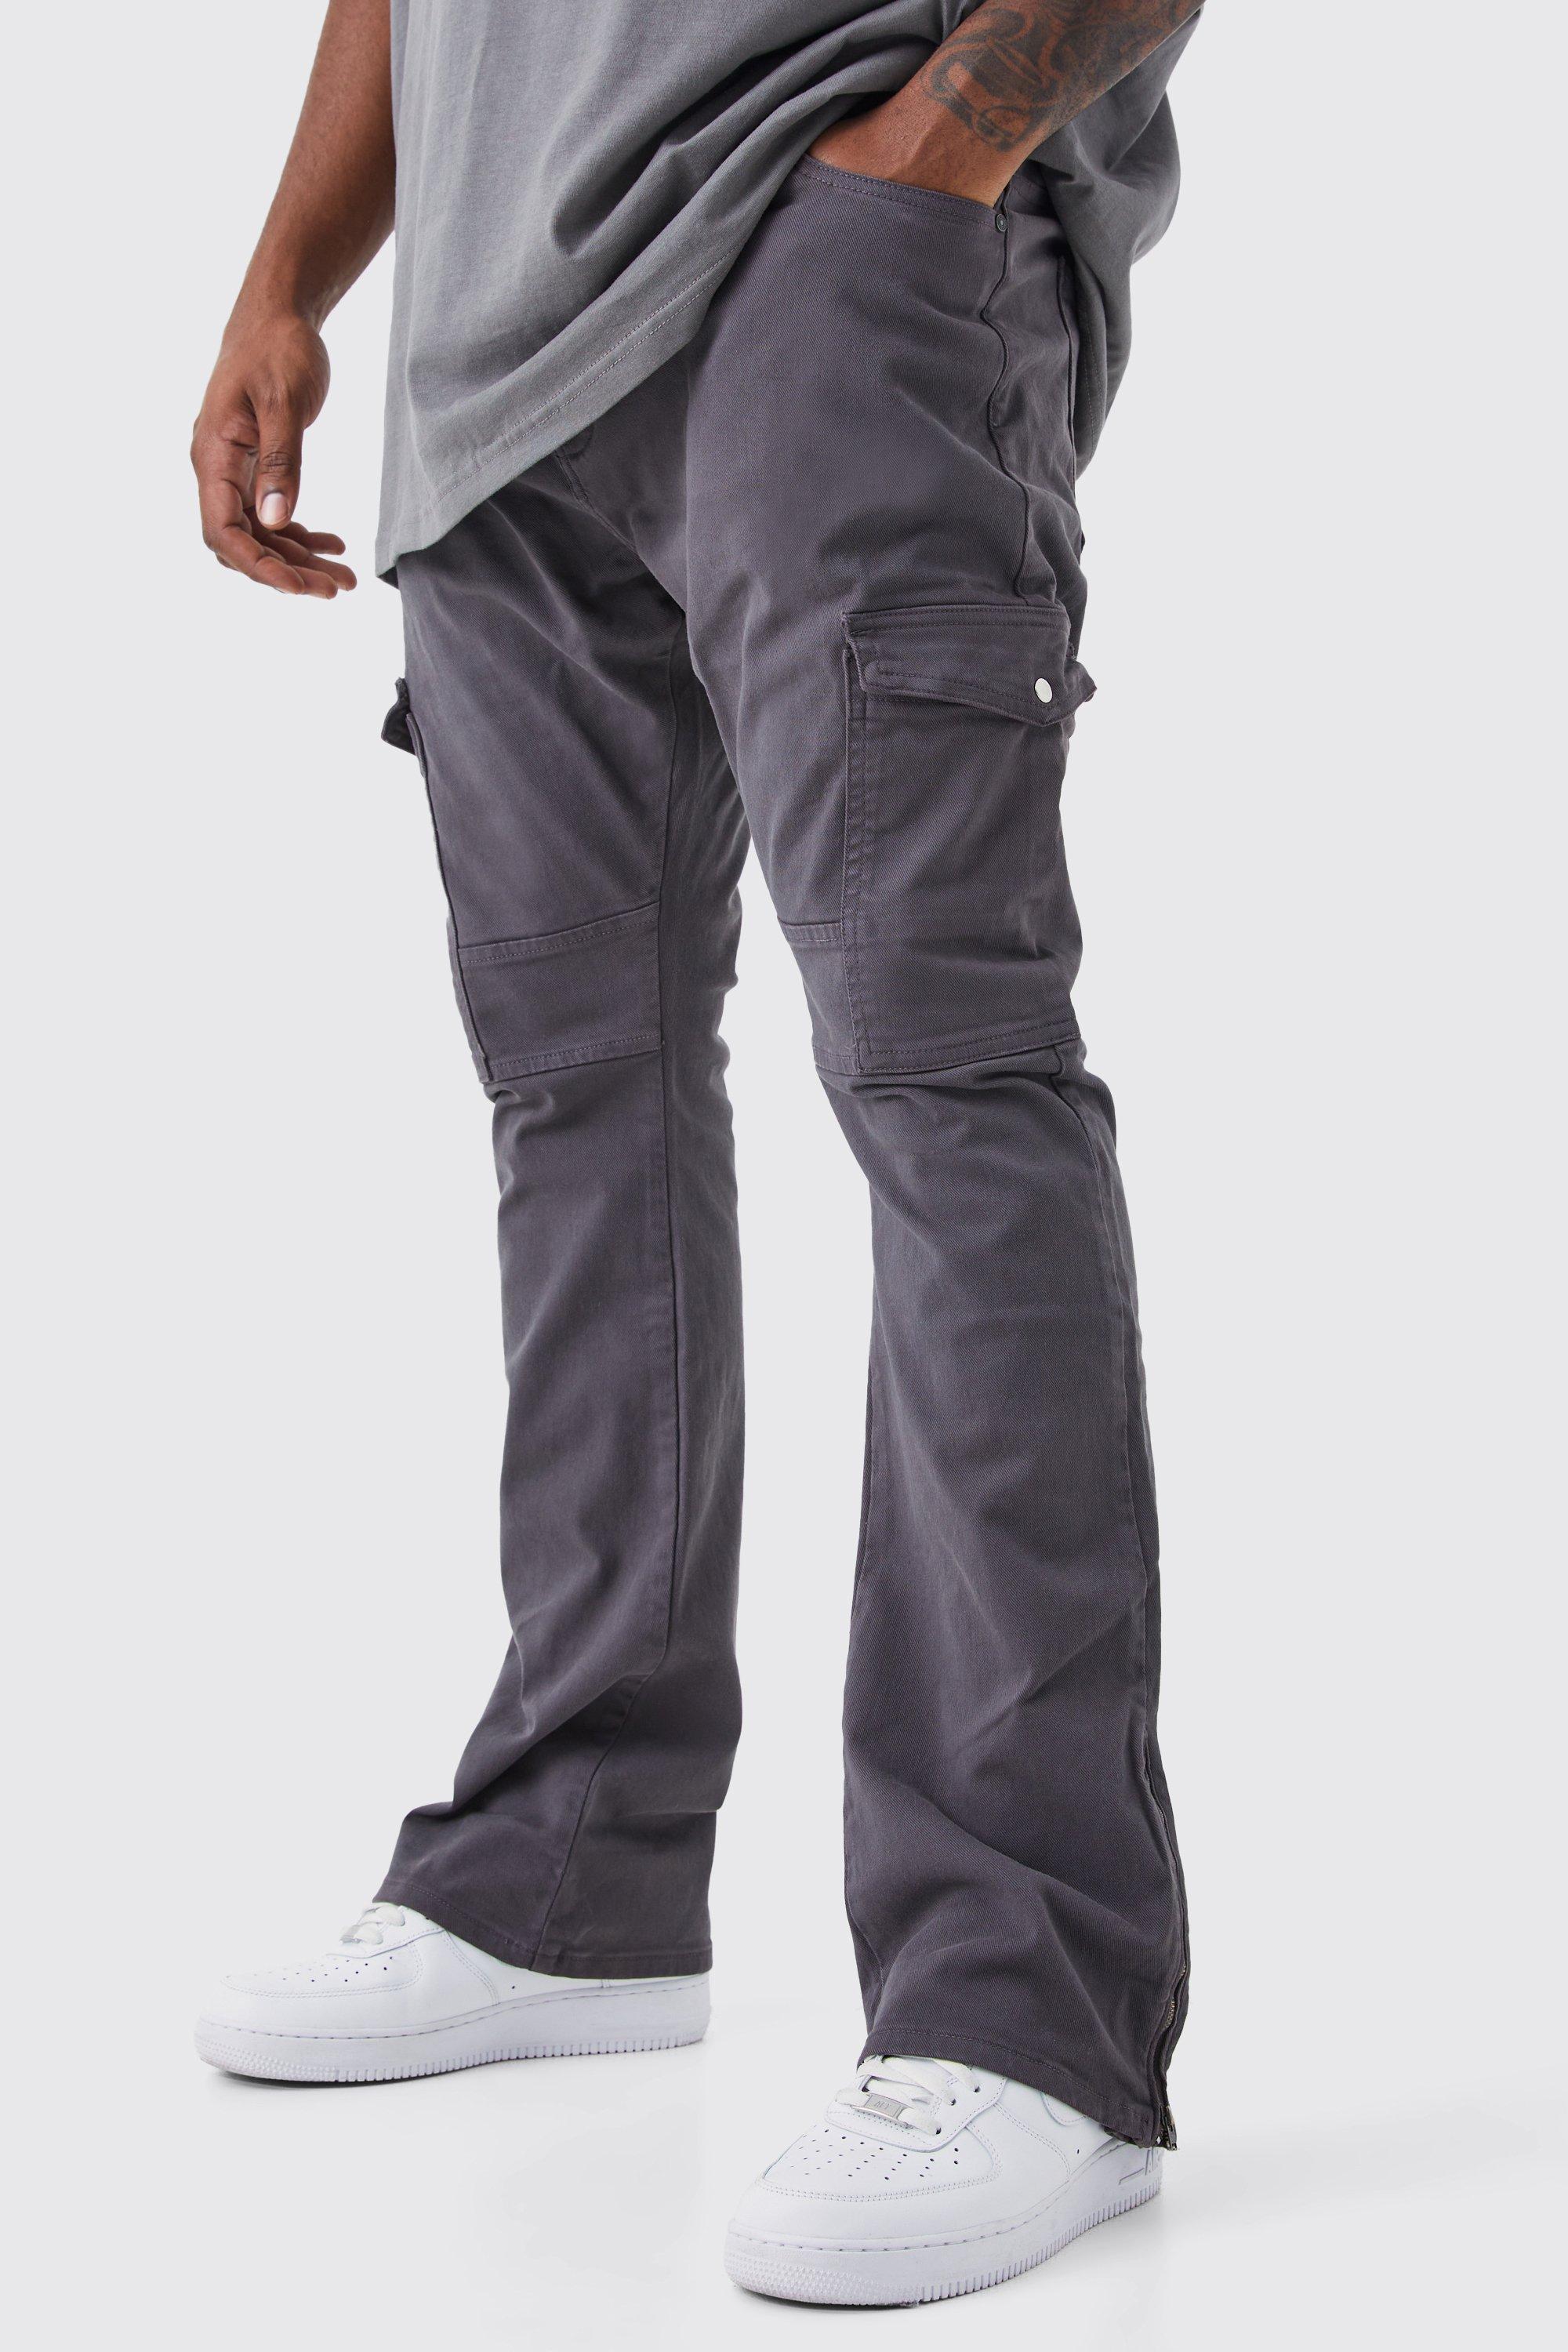 grande taille - pantalon cargo skinny zippé homme - gris - 38, gris